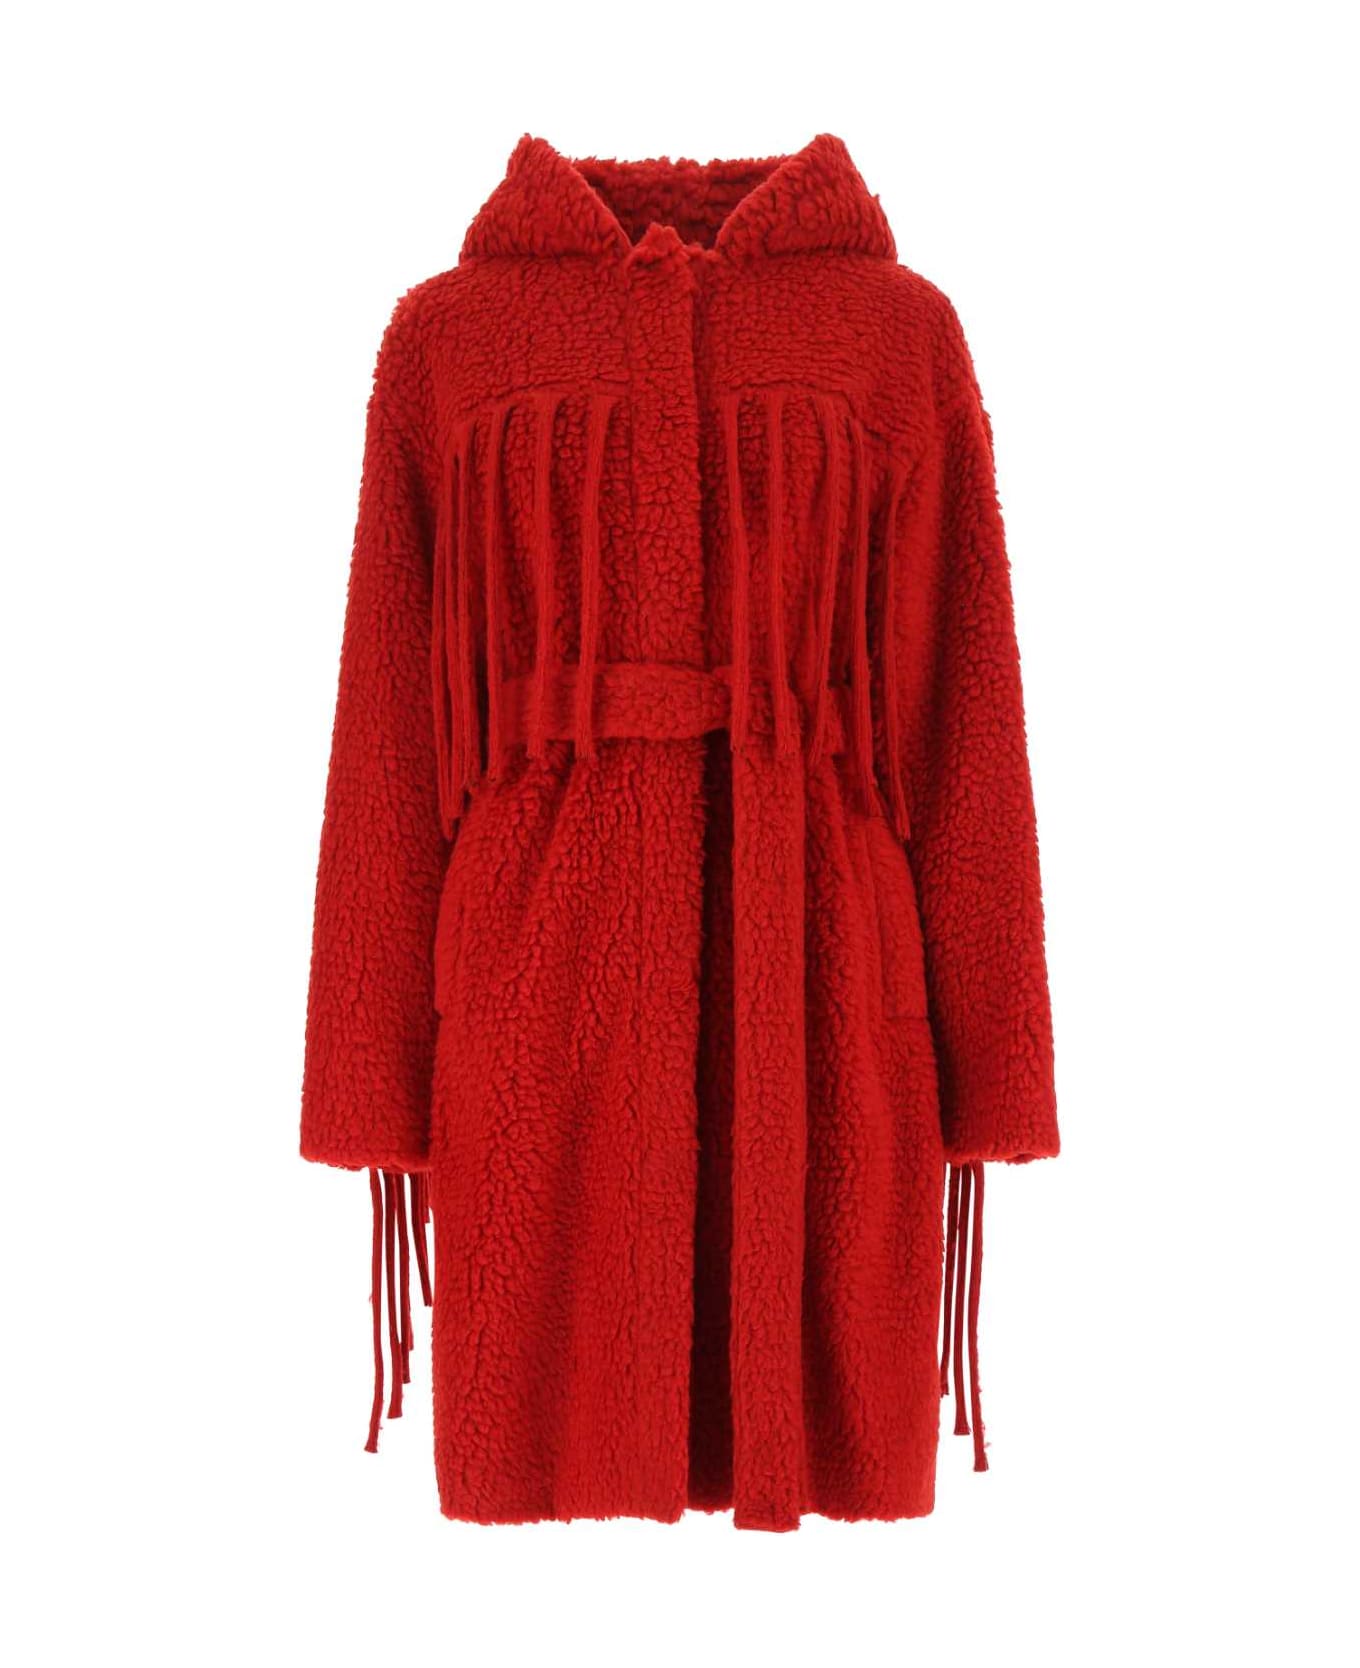 Stella McCartney Red Teddy Coat - 6504